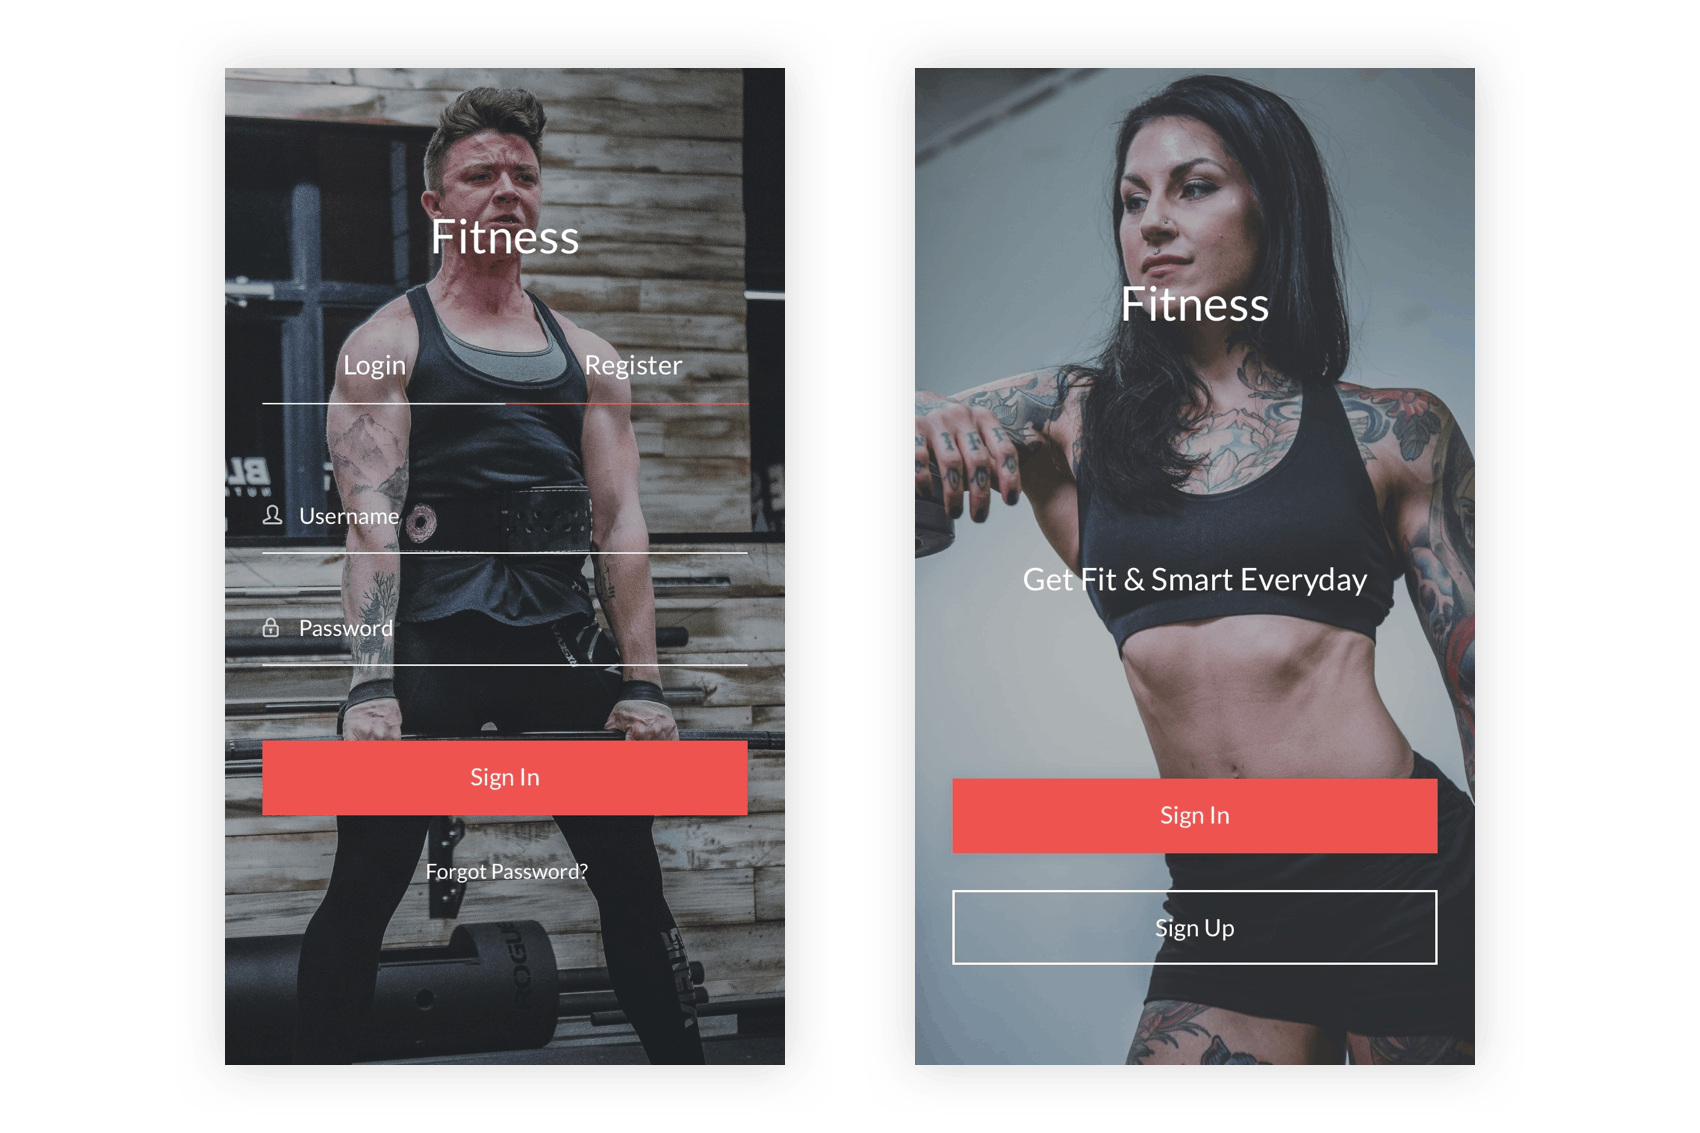 健身俱乐部/健身运动APP应用UI设计套件Figma模板 Fitness – Health, Workout & Gym UI Kit for Figma插图(1)